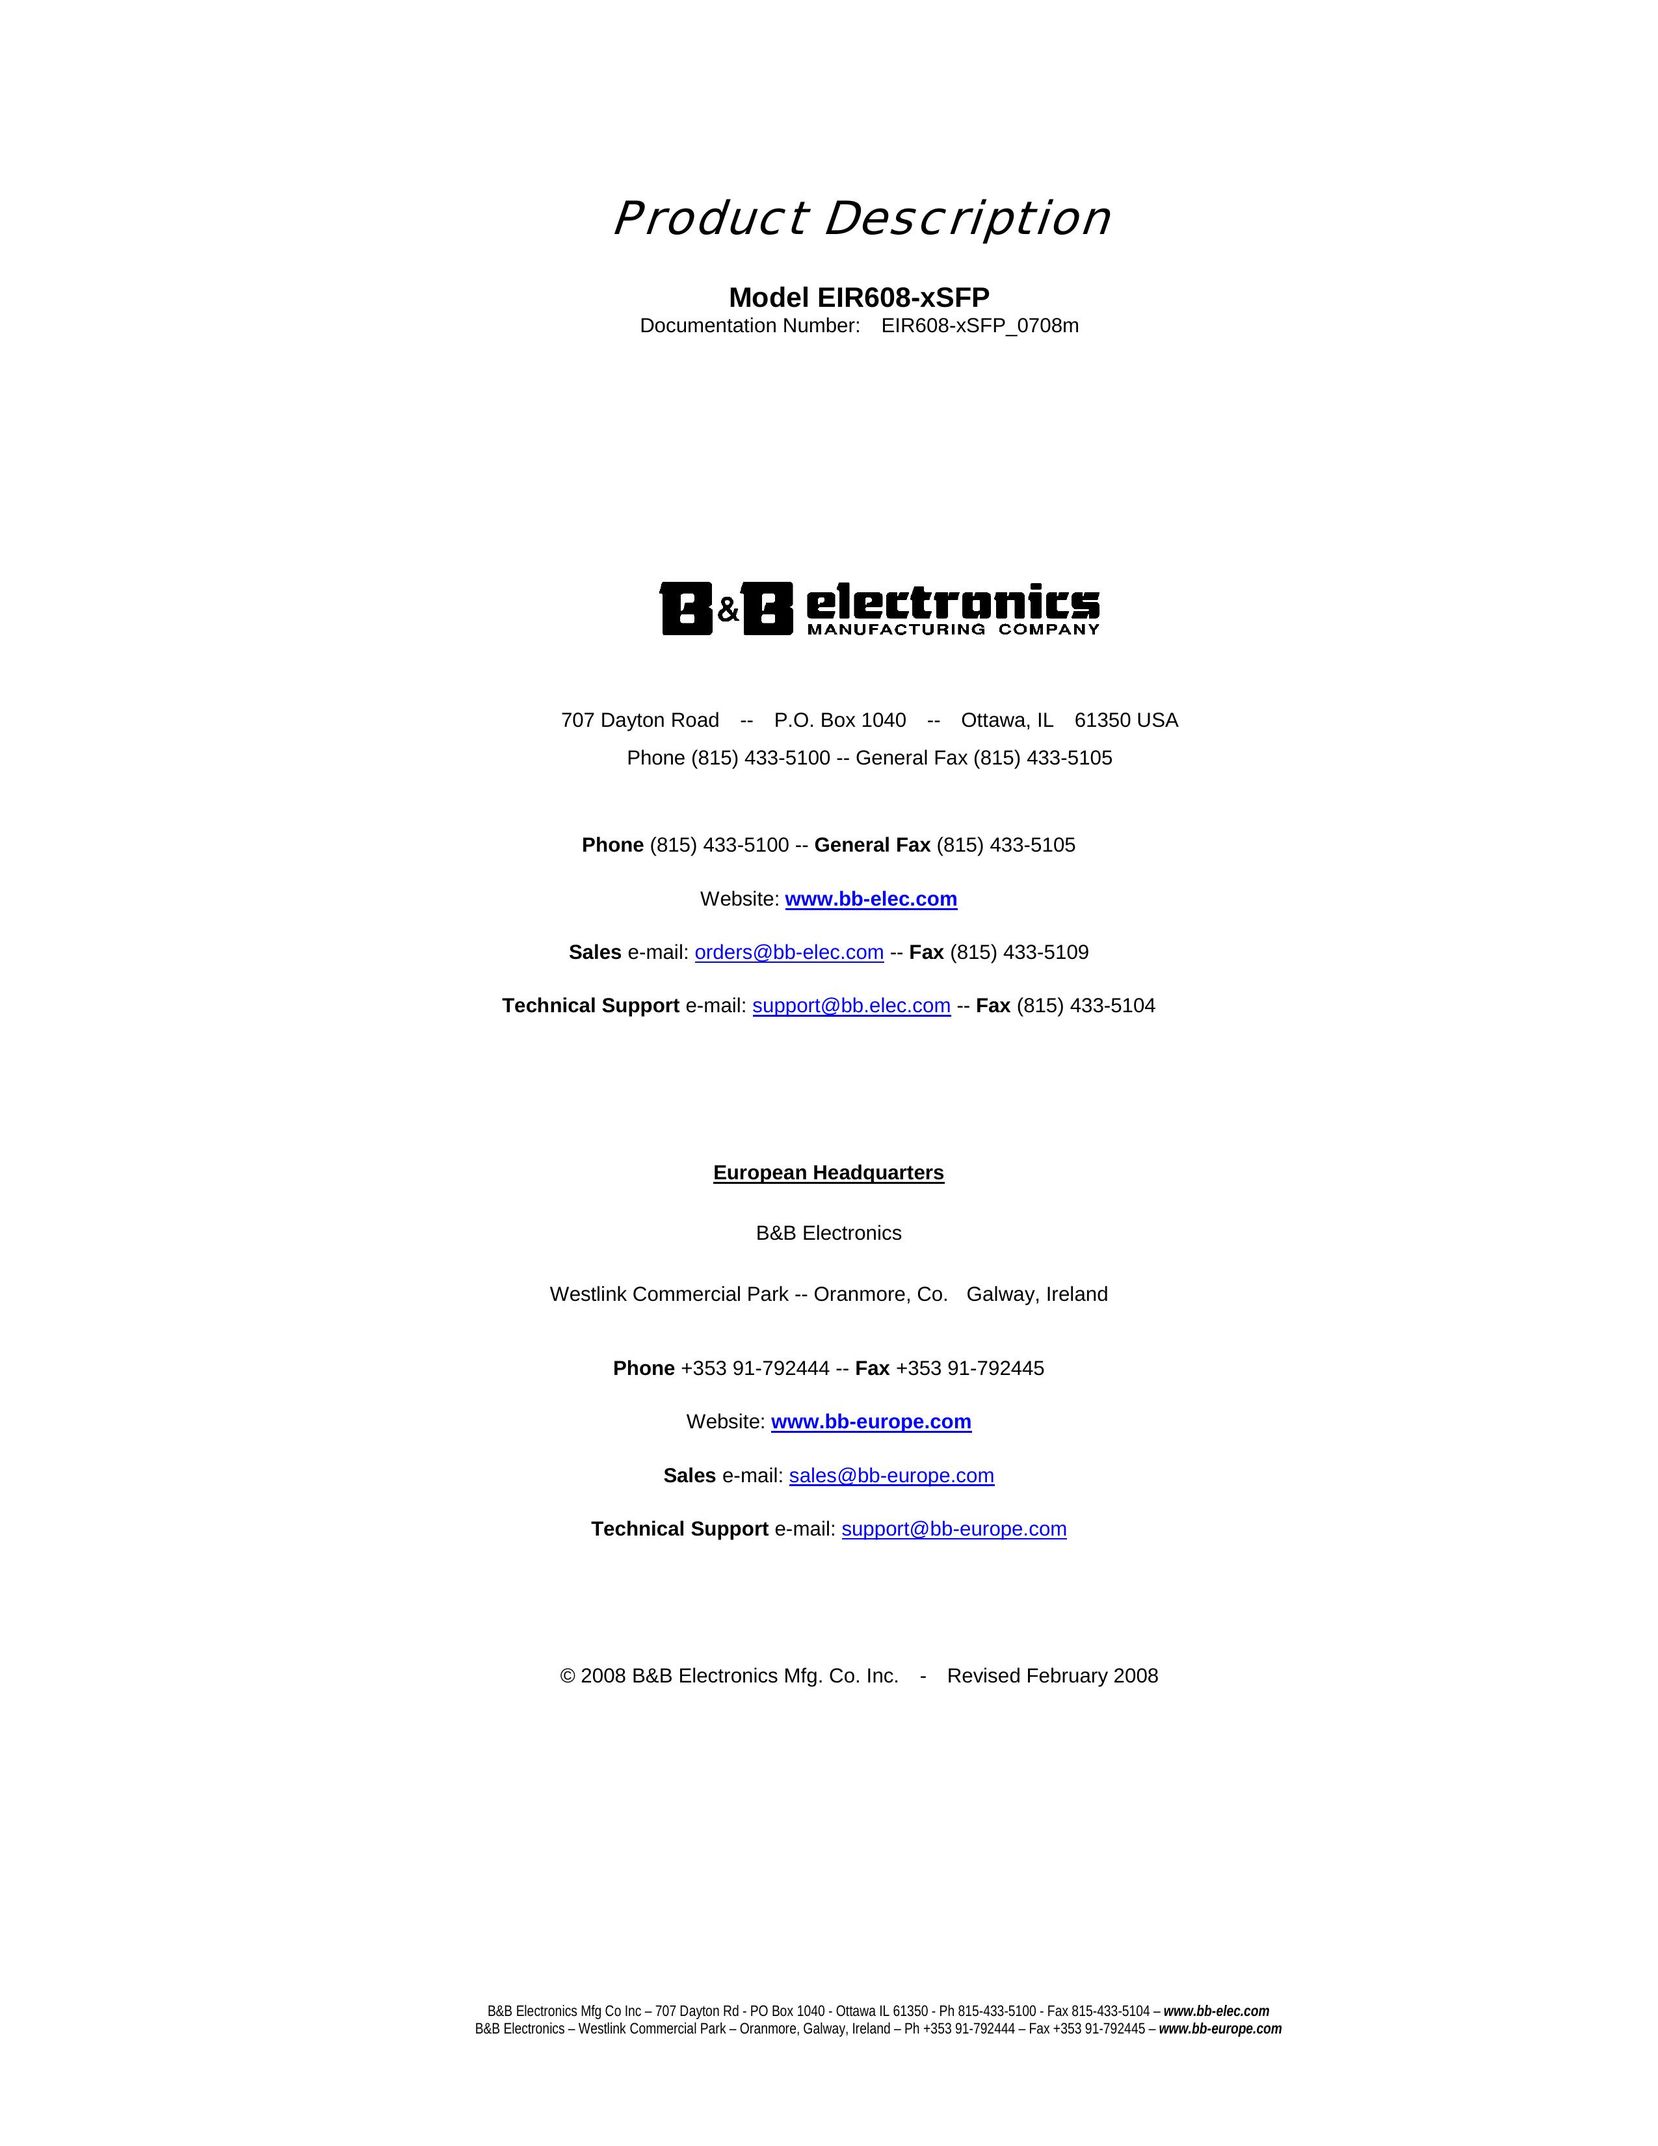 B&B Electronics EIR608-xSFP Network Hardware User Manual